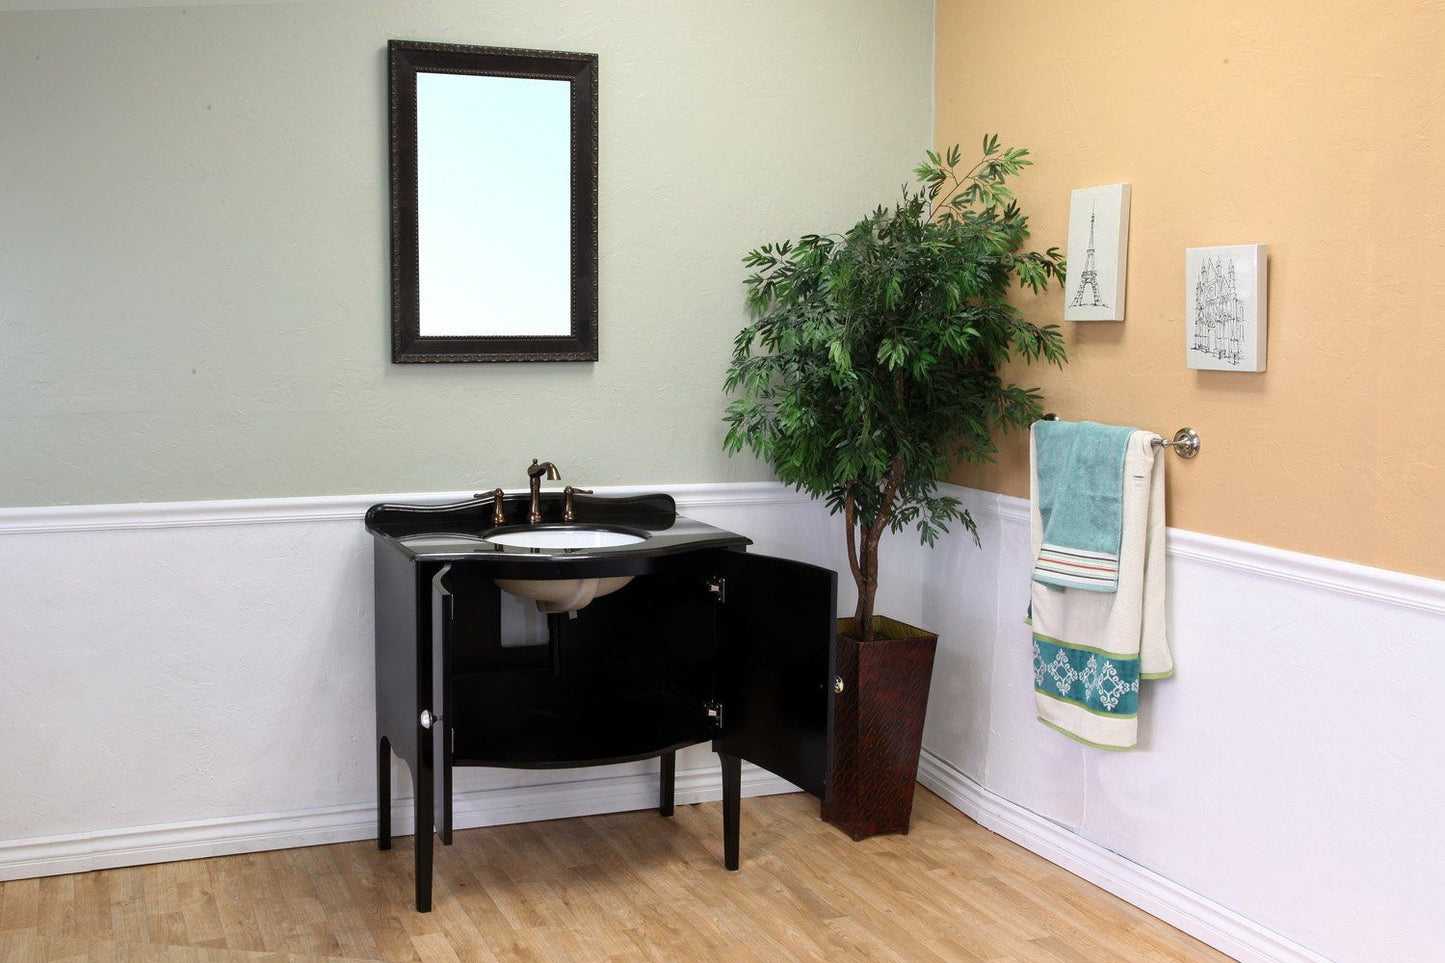 36.6" In Single Sink Vanity Wood Black - Luxe Bathroom Vanities